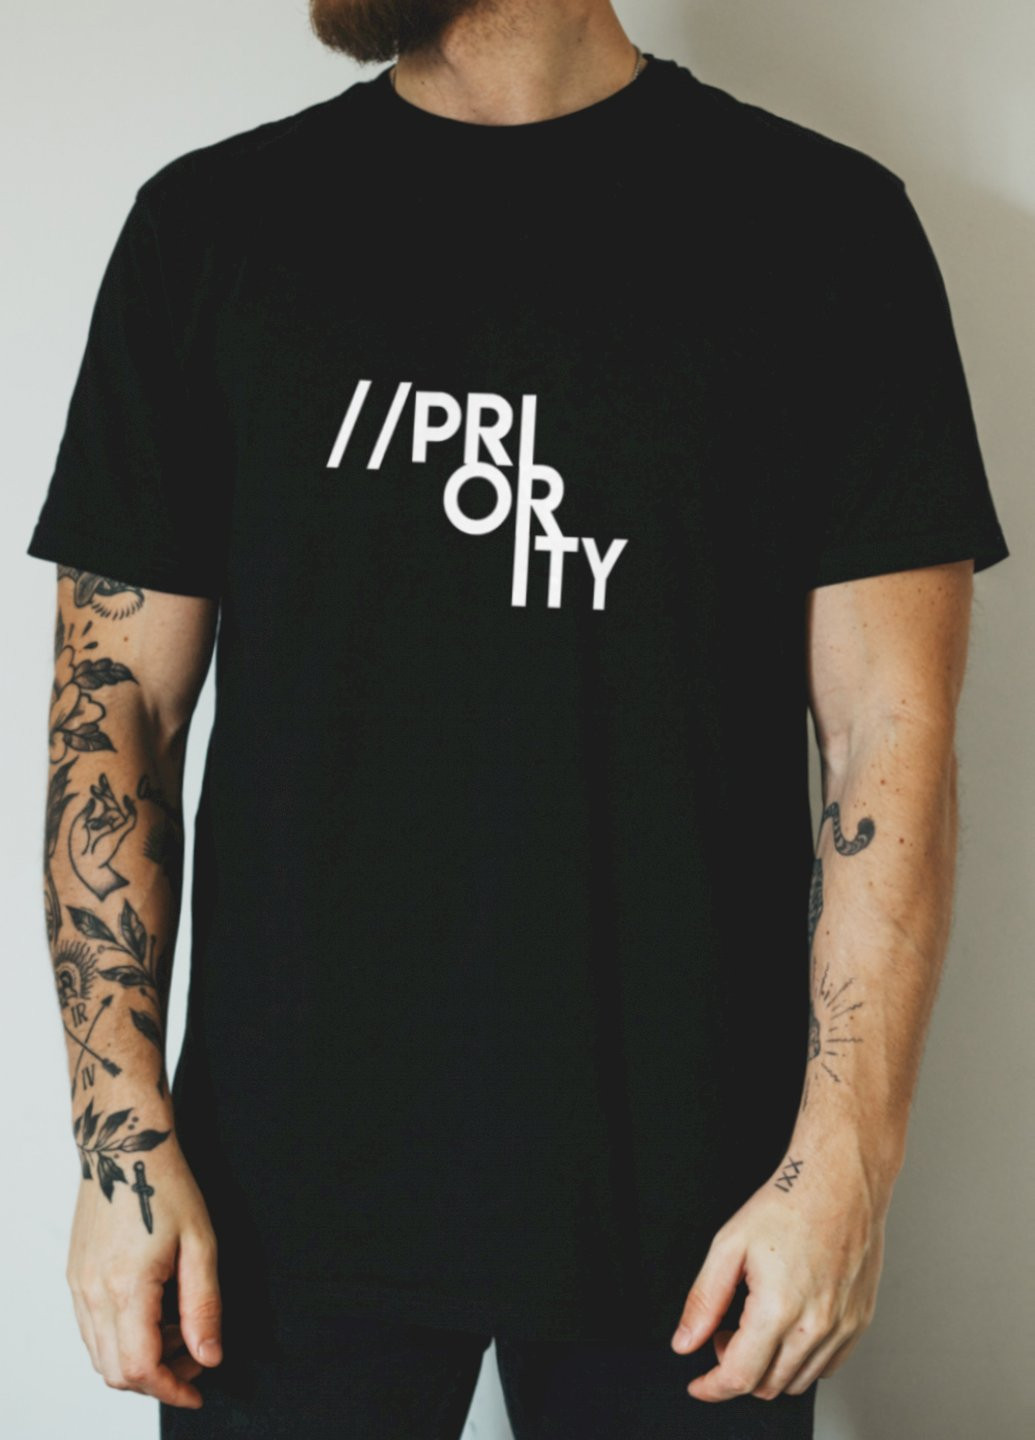 Чорна футболка "//priority" Ctrl+